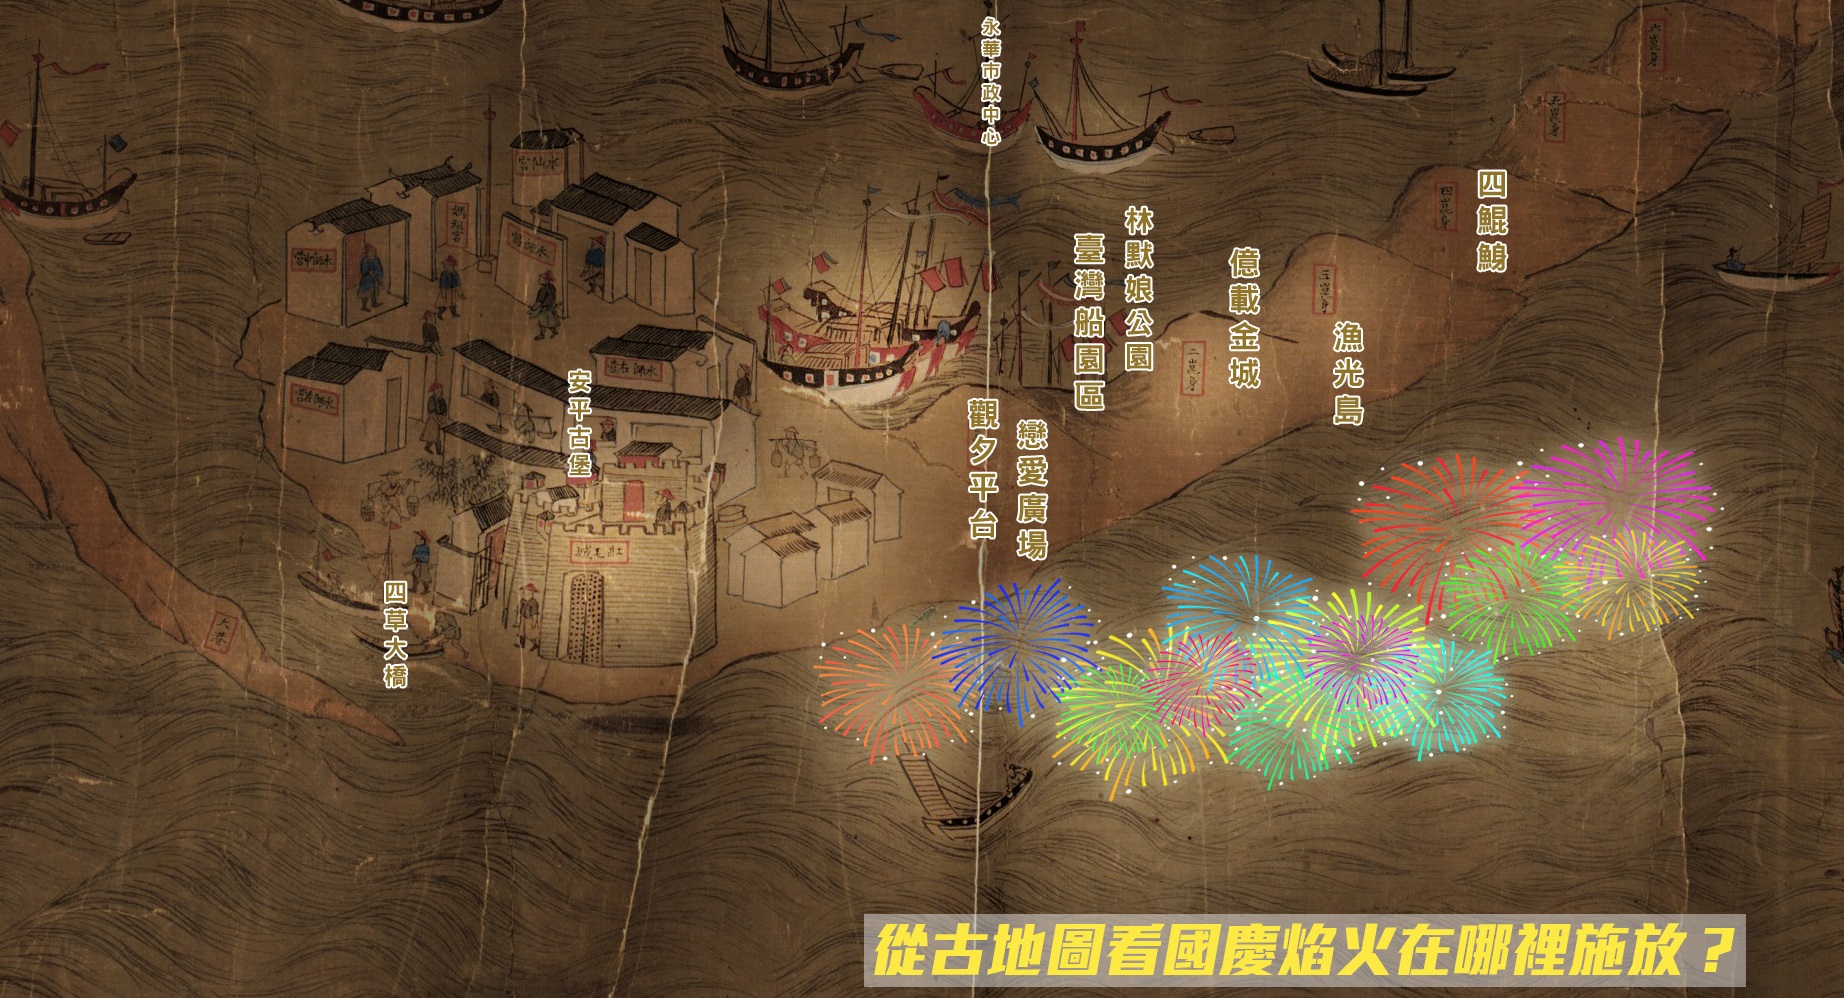 從古地圖看國慶焰火 邀您一起來欣賞